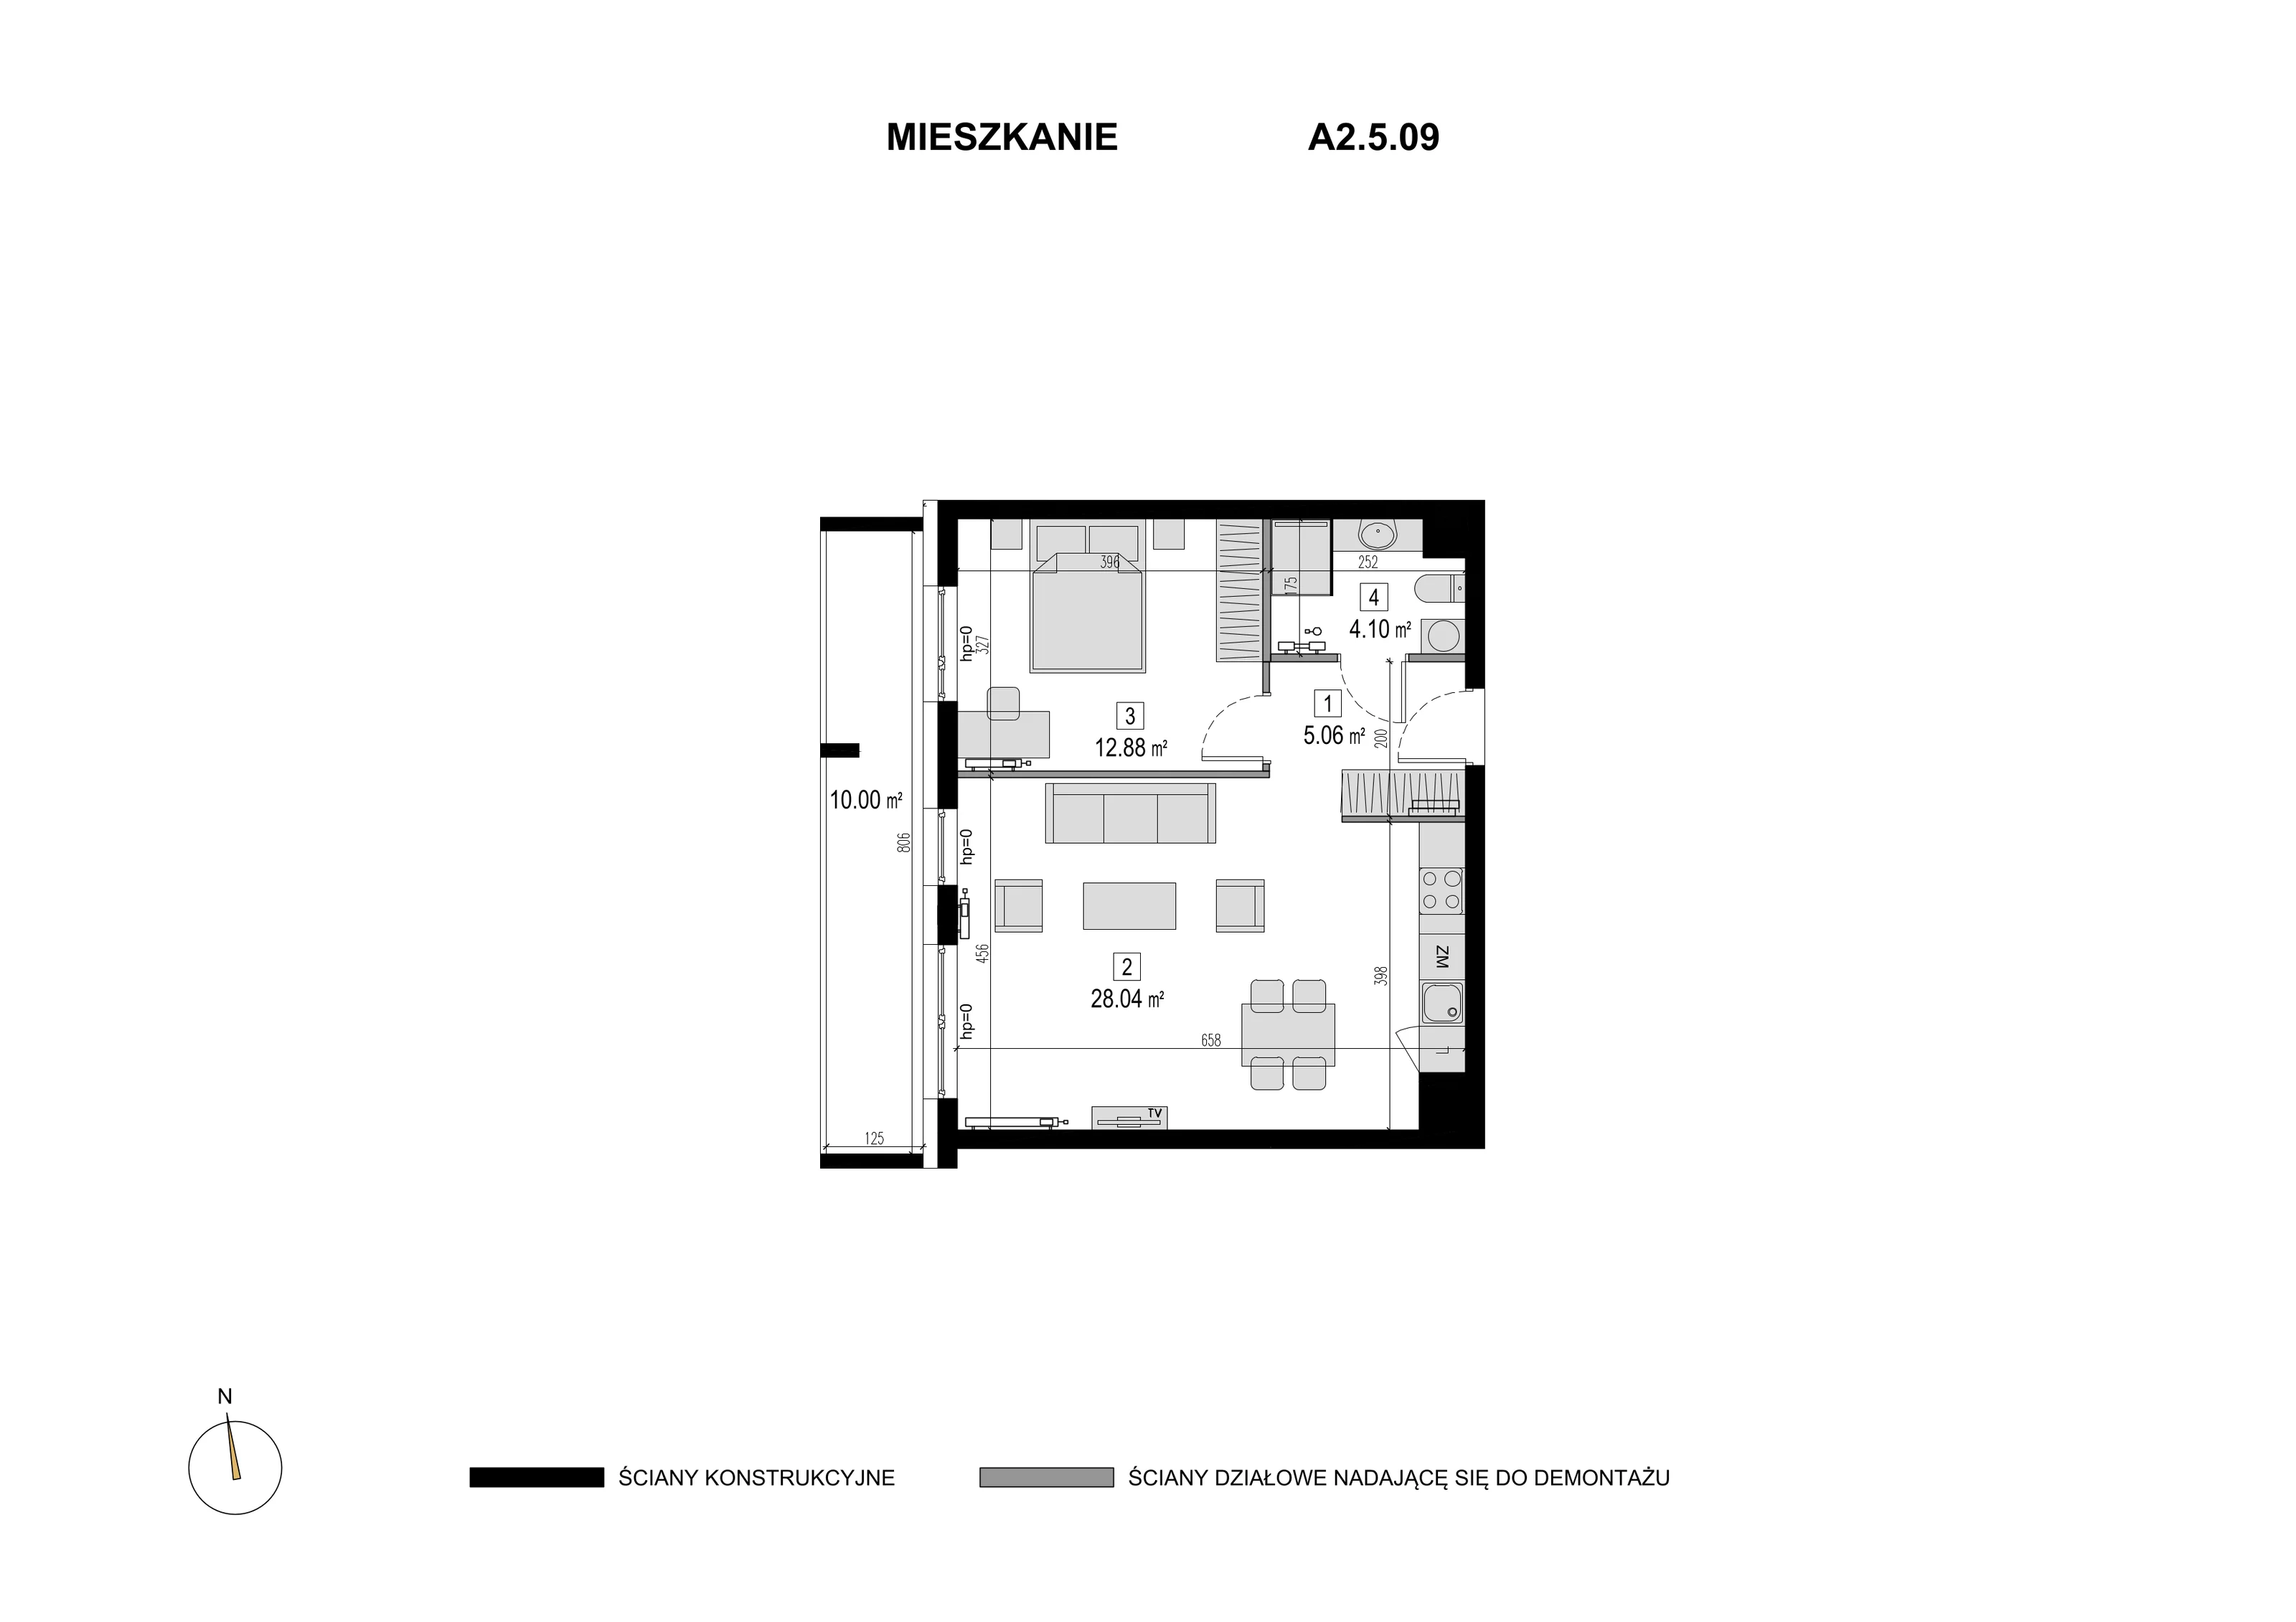 Mieszkanie 50,08 m², piętro 4, oferta nr A2.5.09, Novaforma, Legnica, ul. Chojnowska